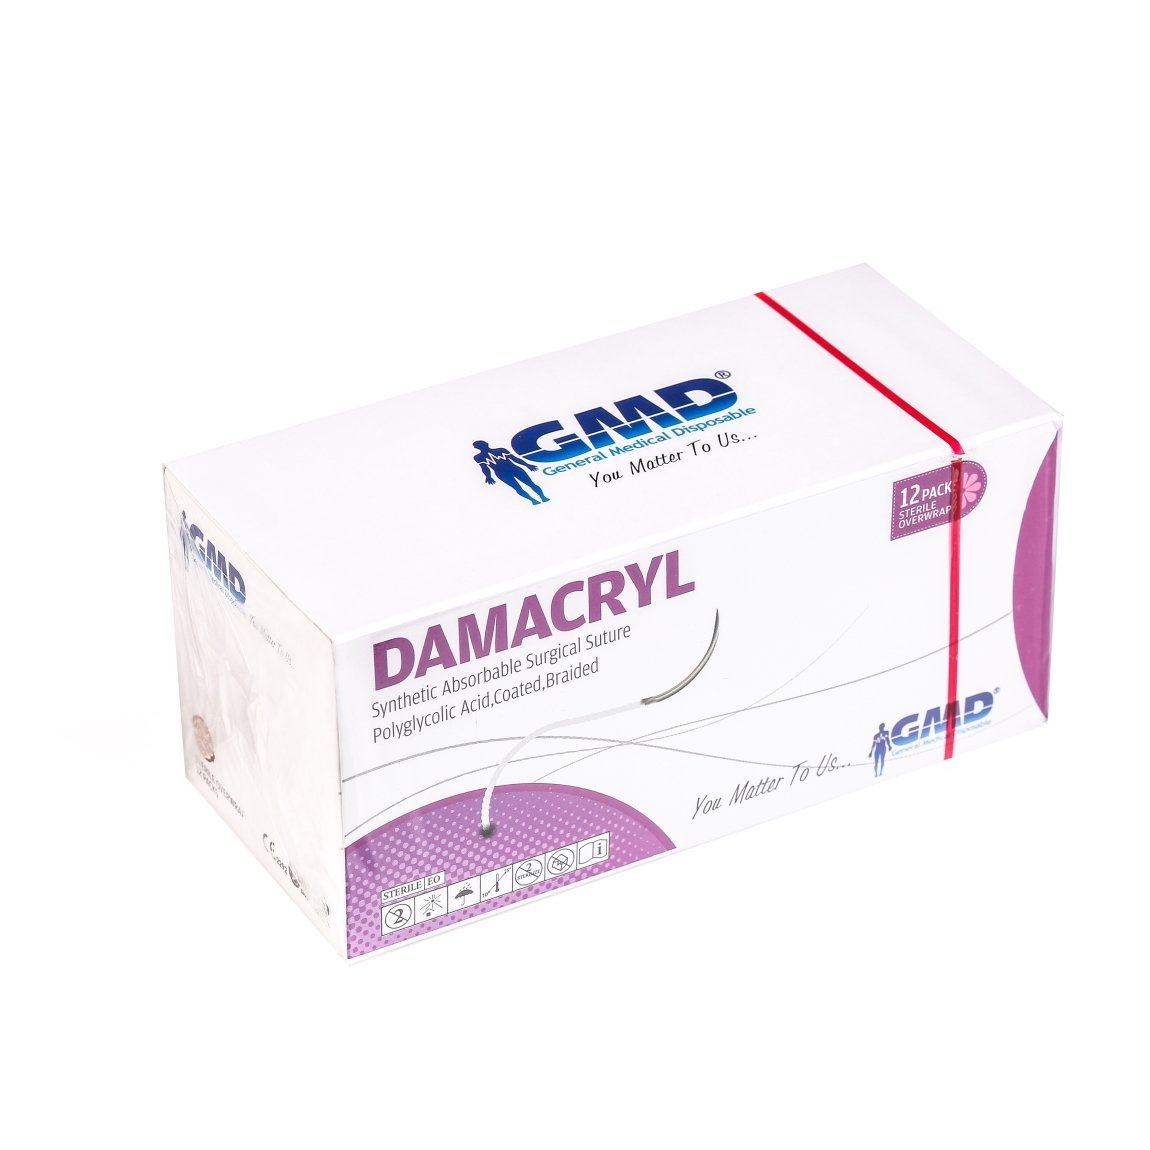 Damacryl Emilebilir Cerrahi Sütür - PGA İplik - USP: 1-75cm - 3/8 Daire 40 mm - Ters Keskin İğne